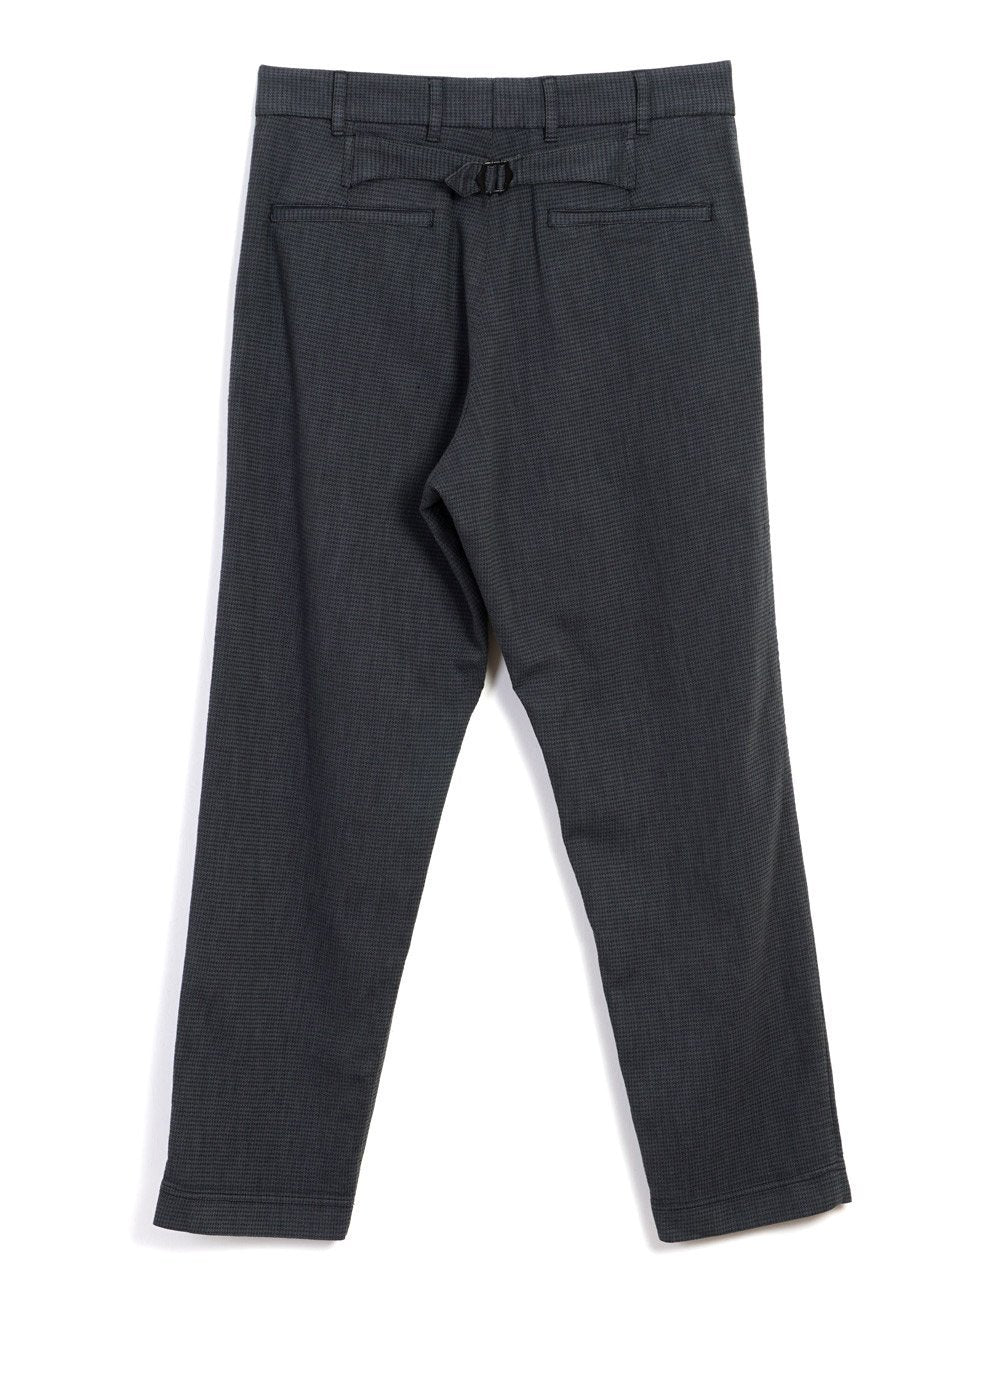 HANSEN GARMENTS - KIAN | Wide Fit Trousers | Elephant - HANSEN Garments